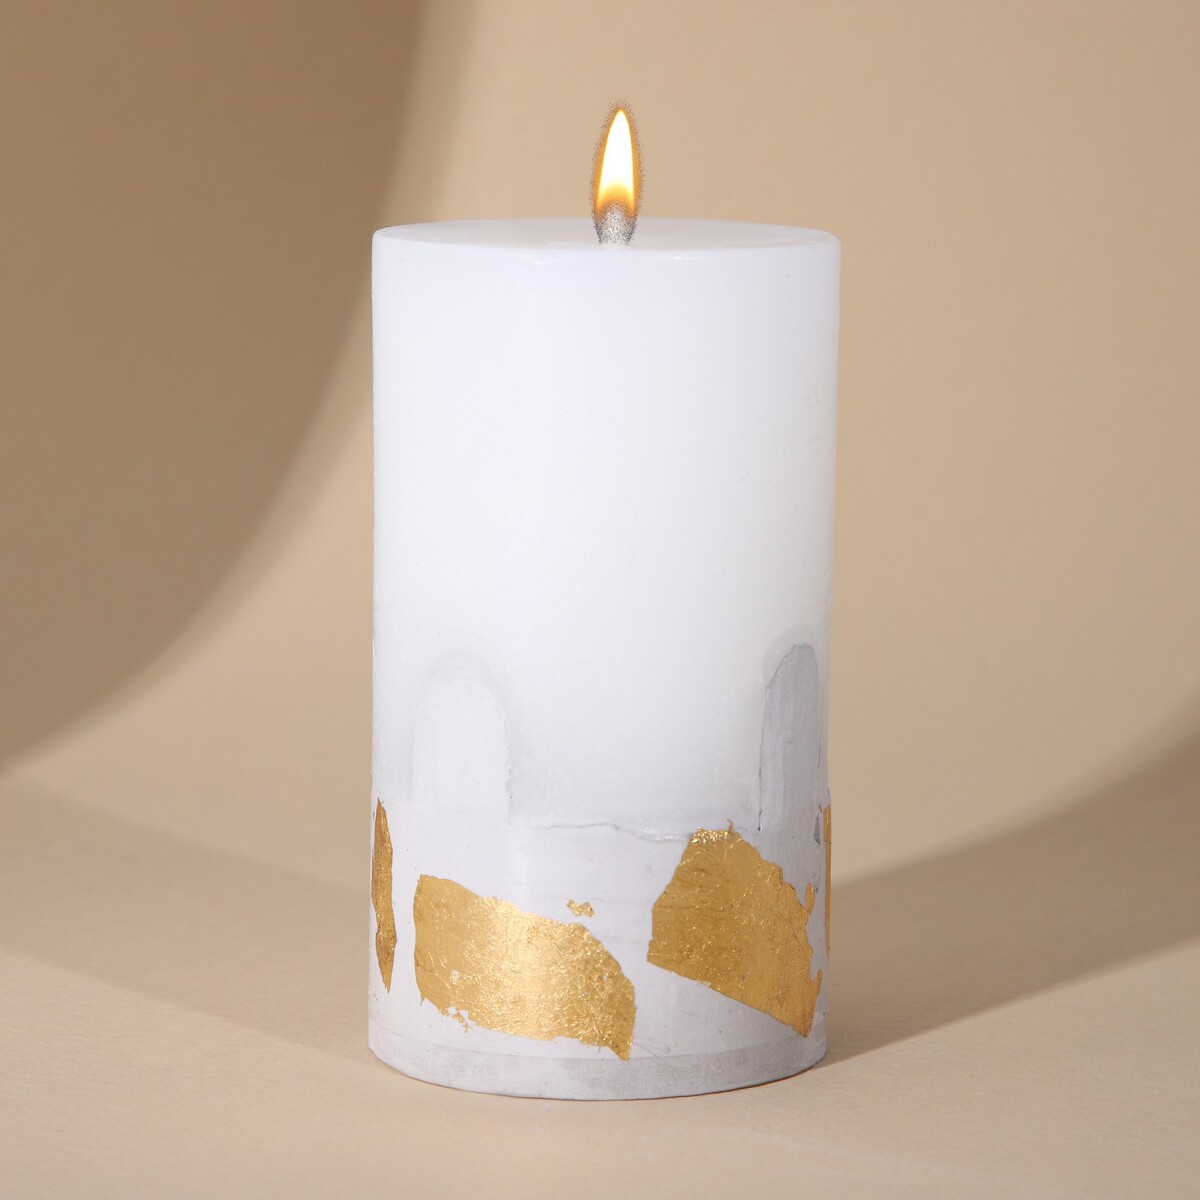 Свеча интерьерная белая с бетоном (поталь), 9,5 х 6 см свеча античная 2 2х26 см белая 2 ч